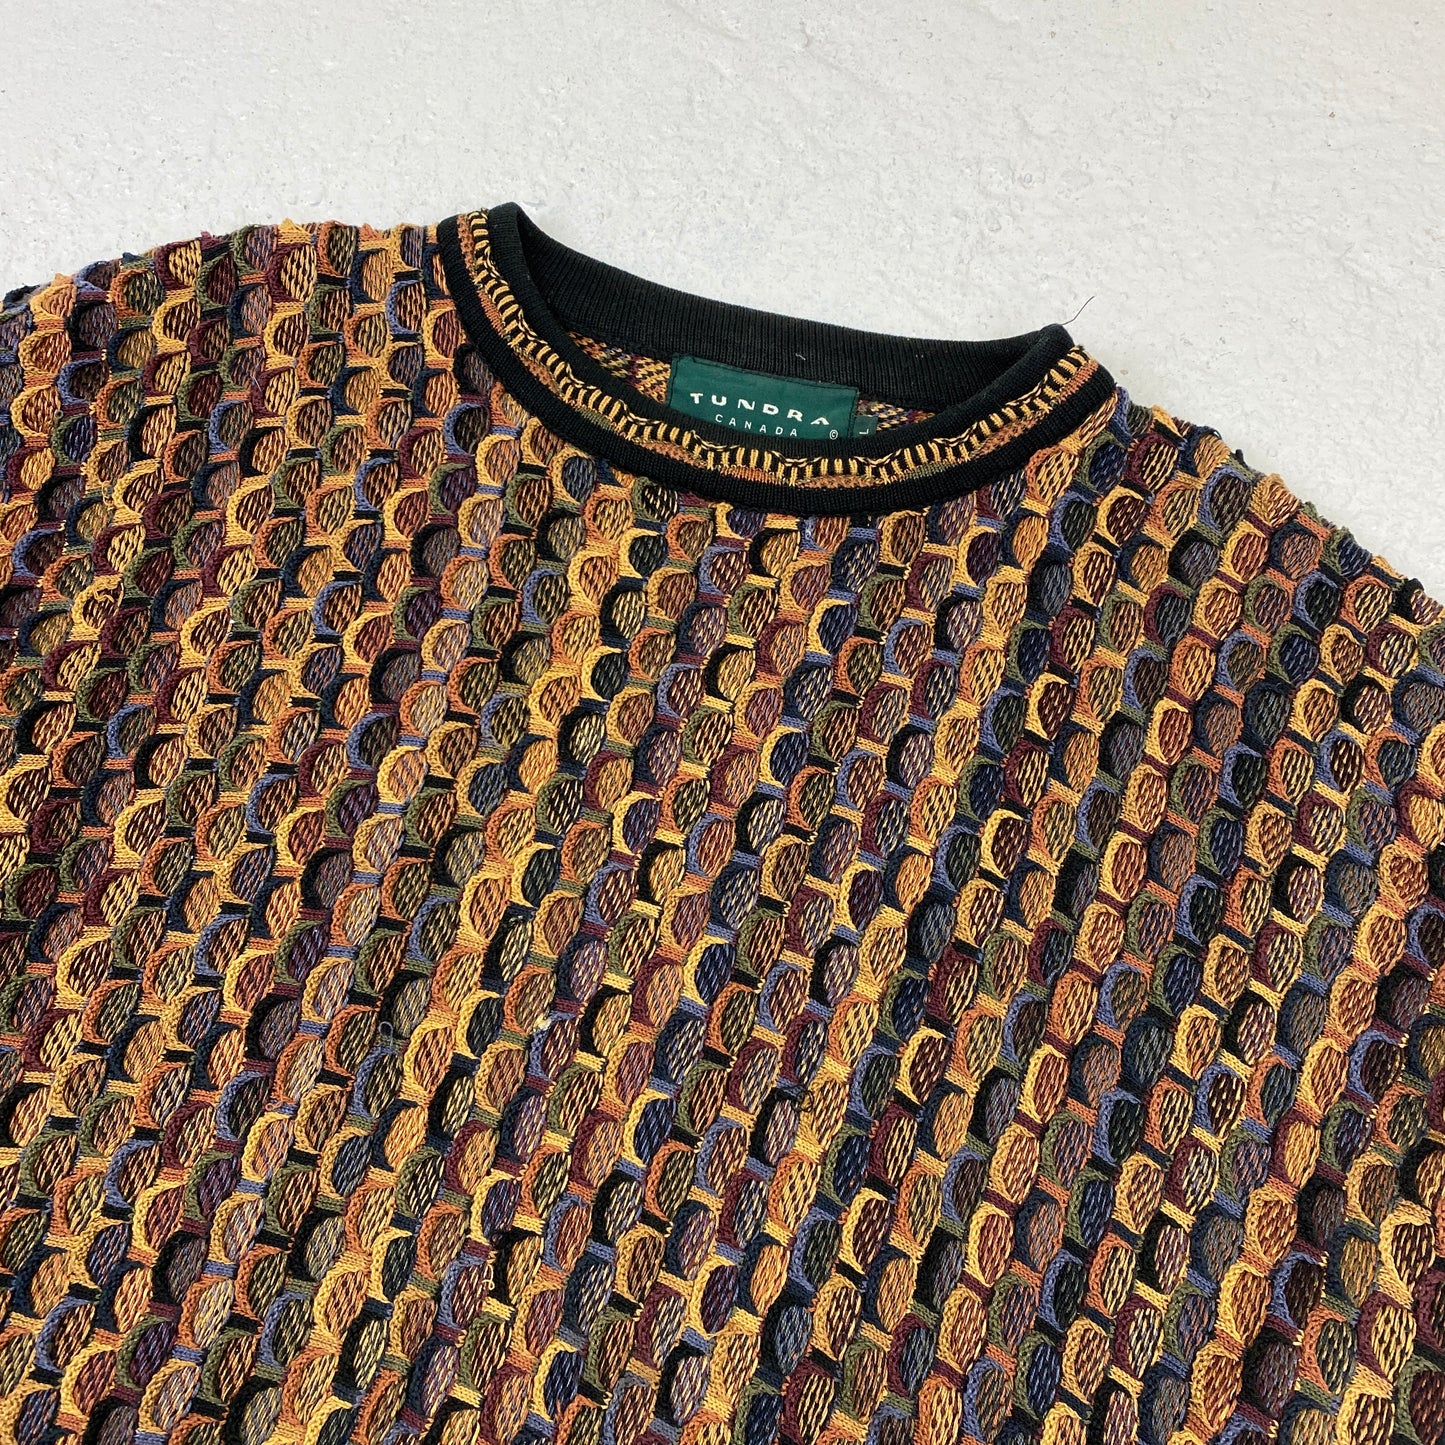 Tundra RARE knit sweater (L)